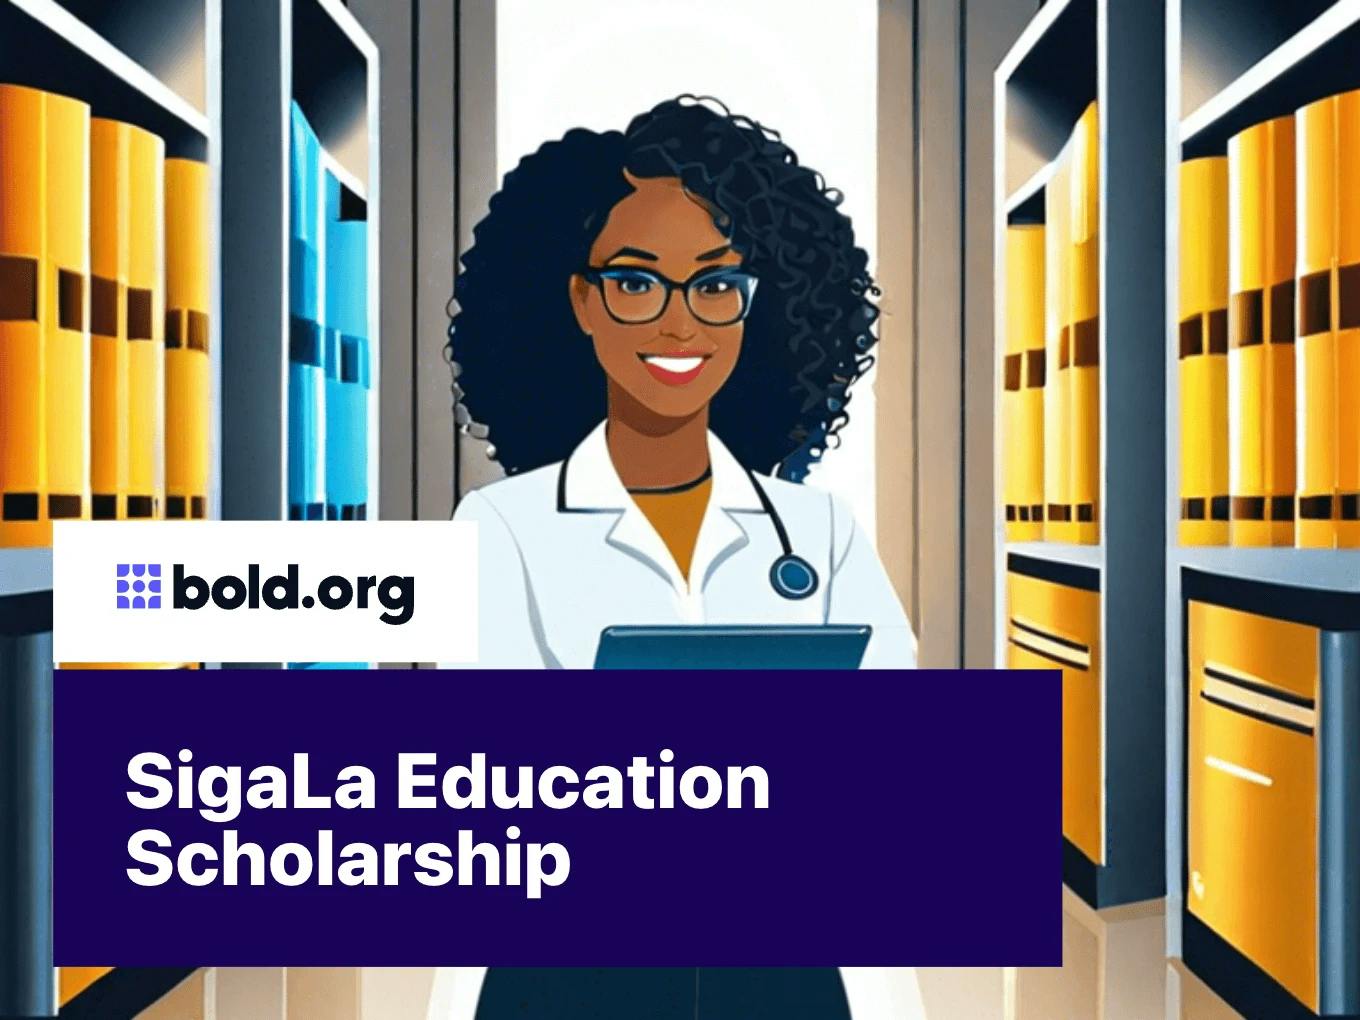 SigaLa Education Scholarship